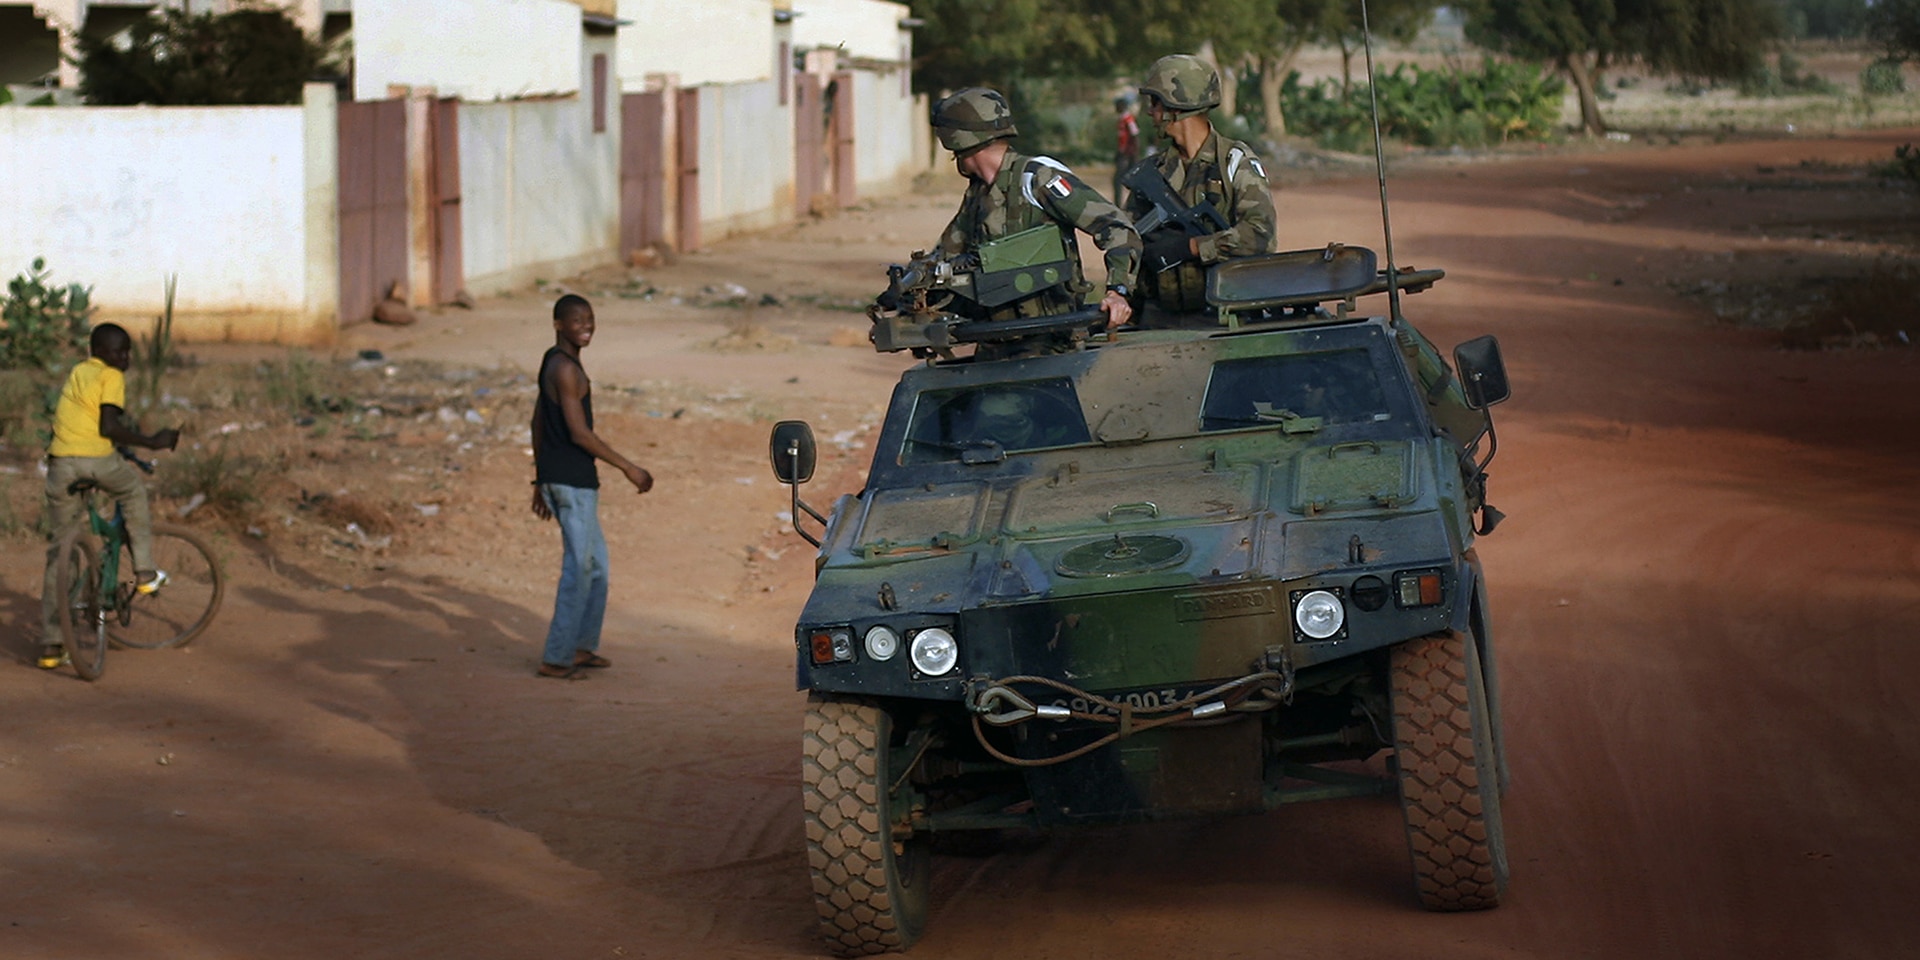 Militärfahrzeug fährt über eine Sandstrasse eines Dorfes.